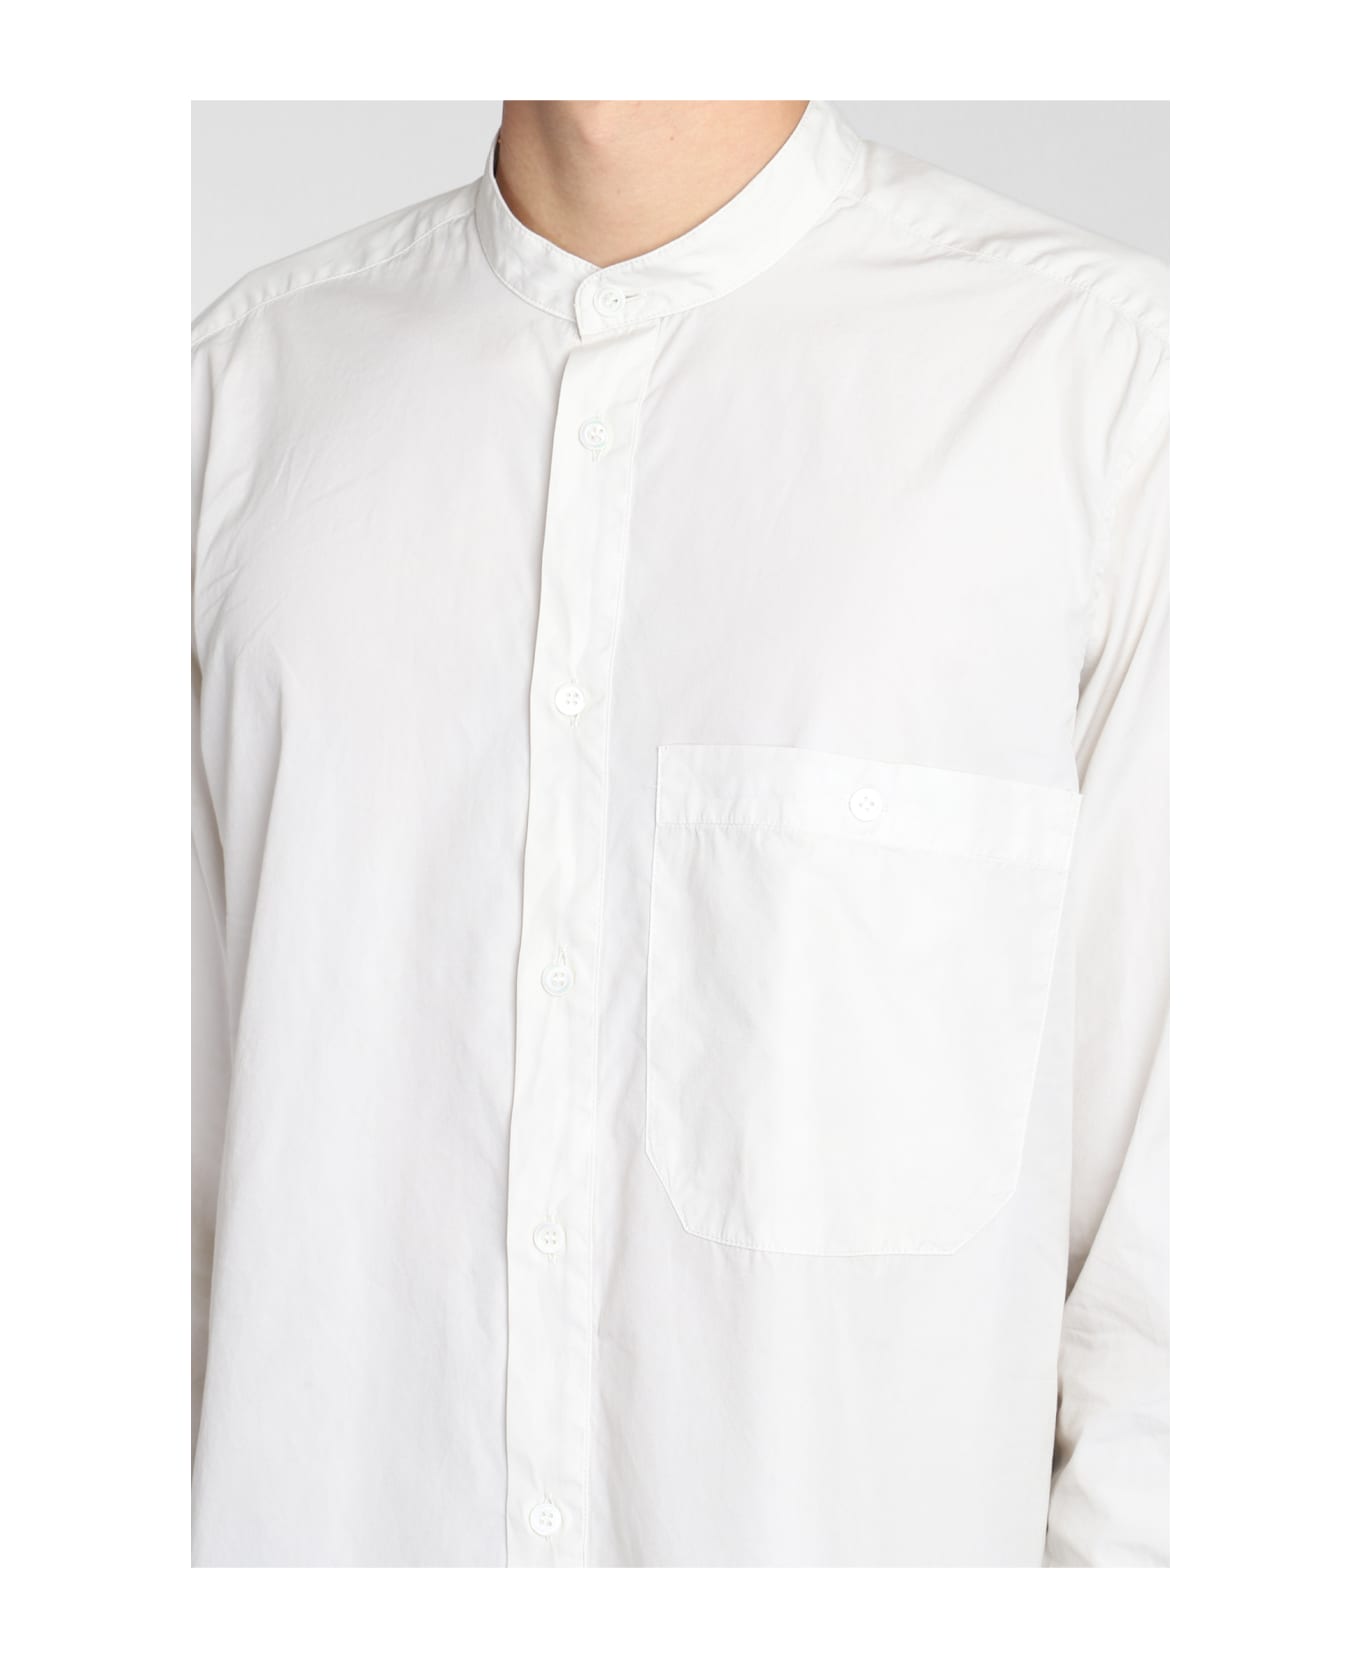 Barena Calumer Shirt In Beige Cotton - beige